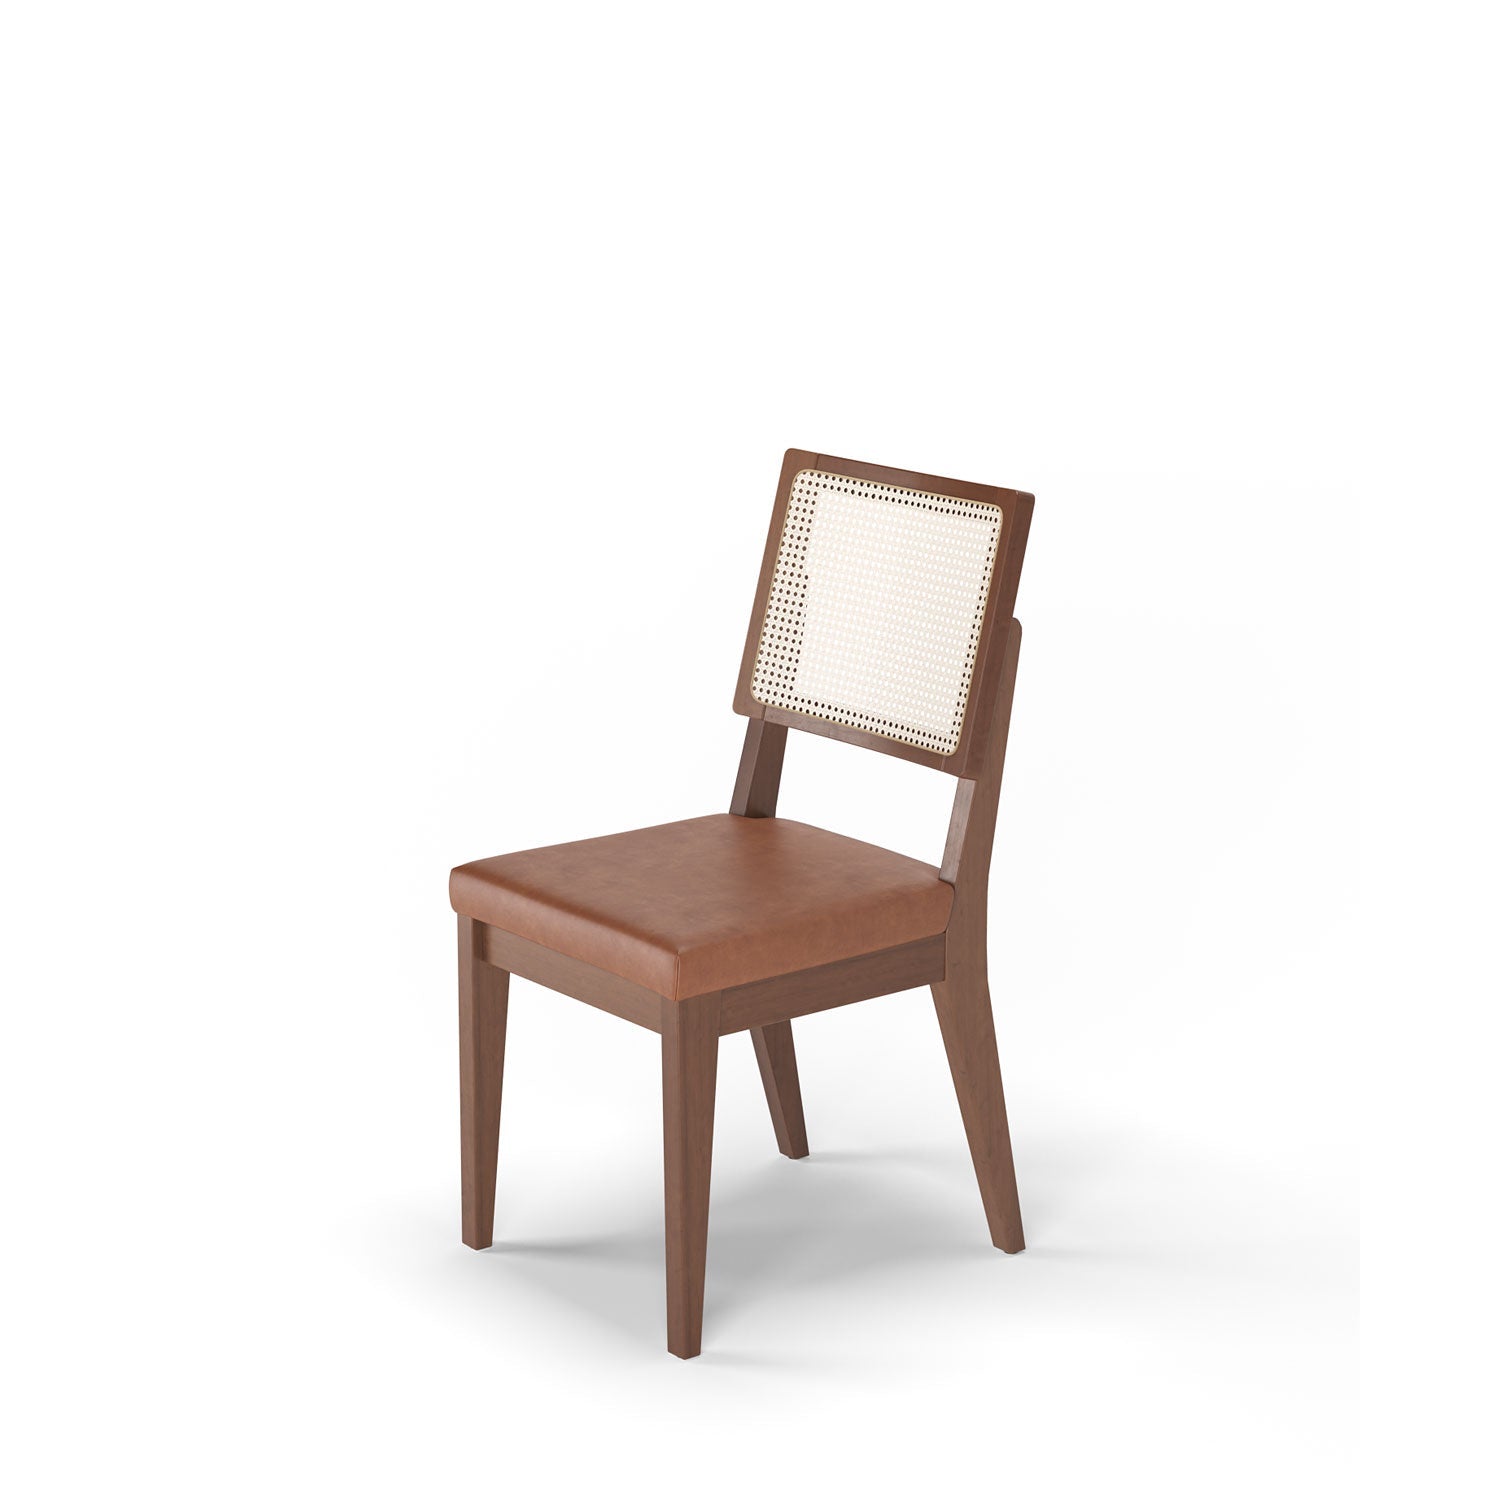 Homedock Cadeira com Palhinha Saga - Natural c/ PU Caramel Província